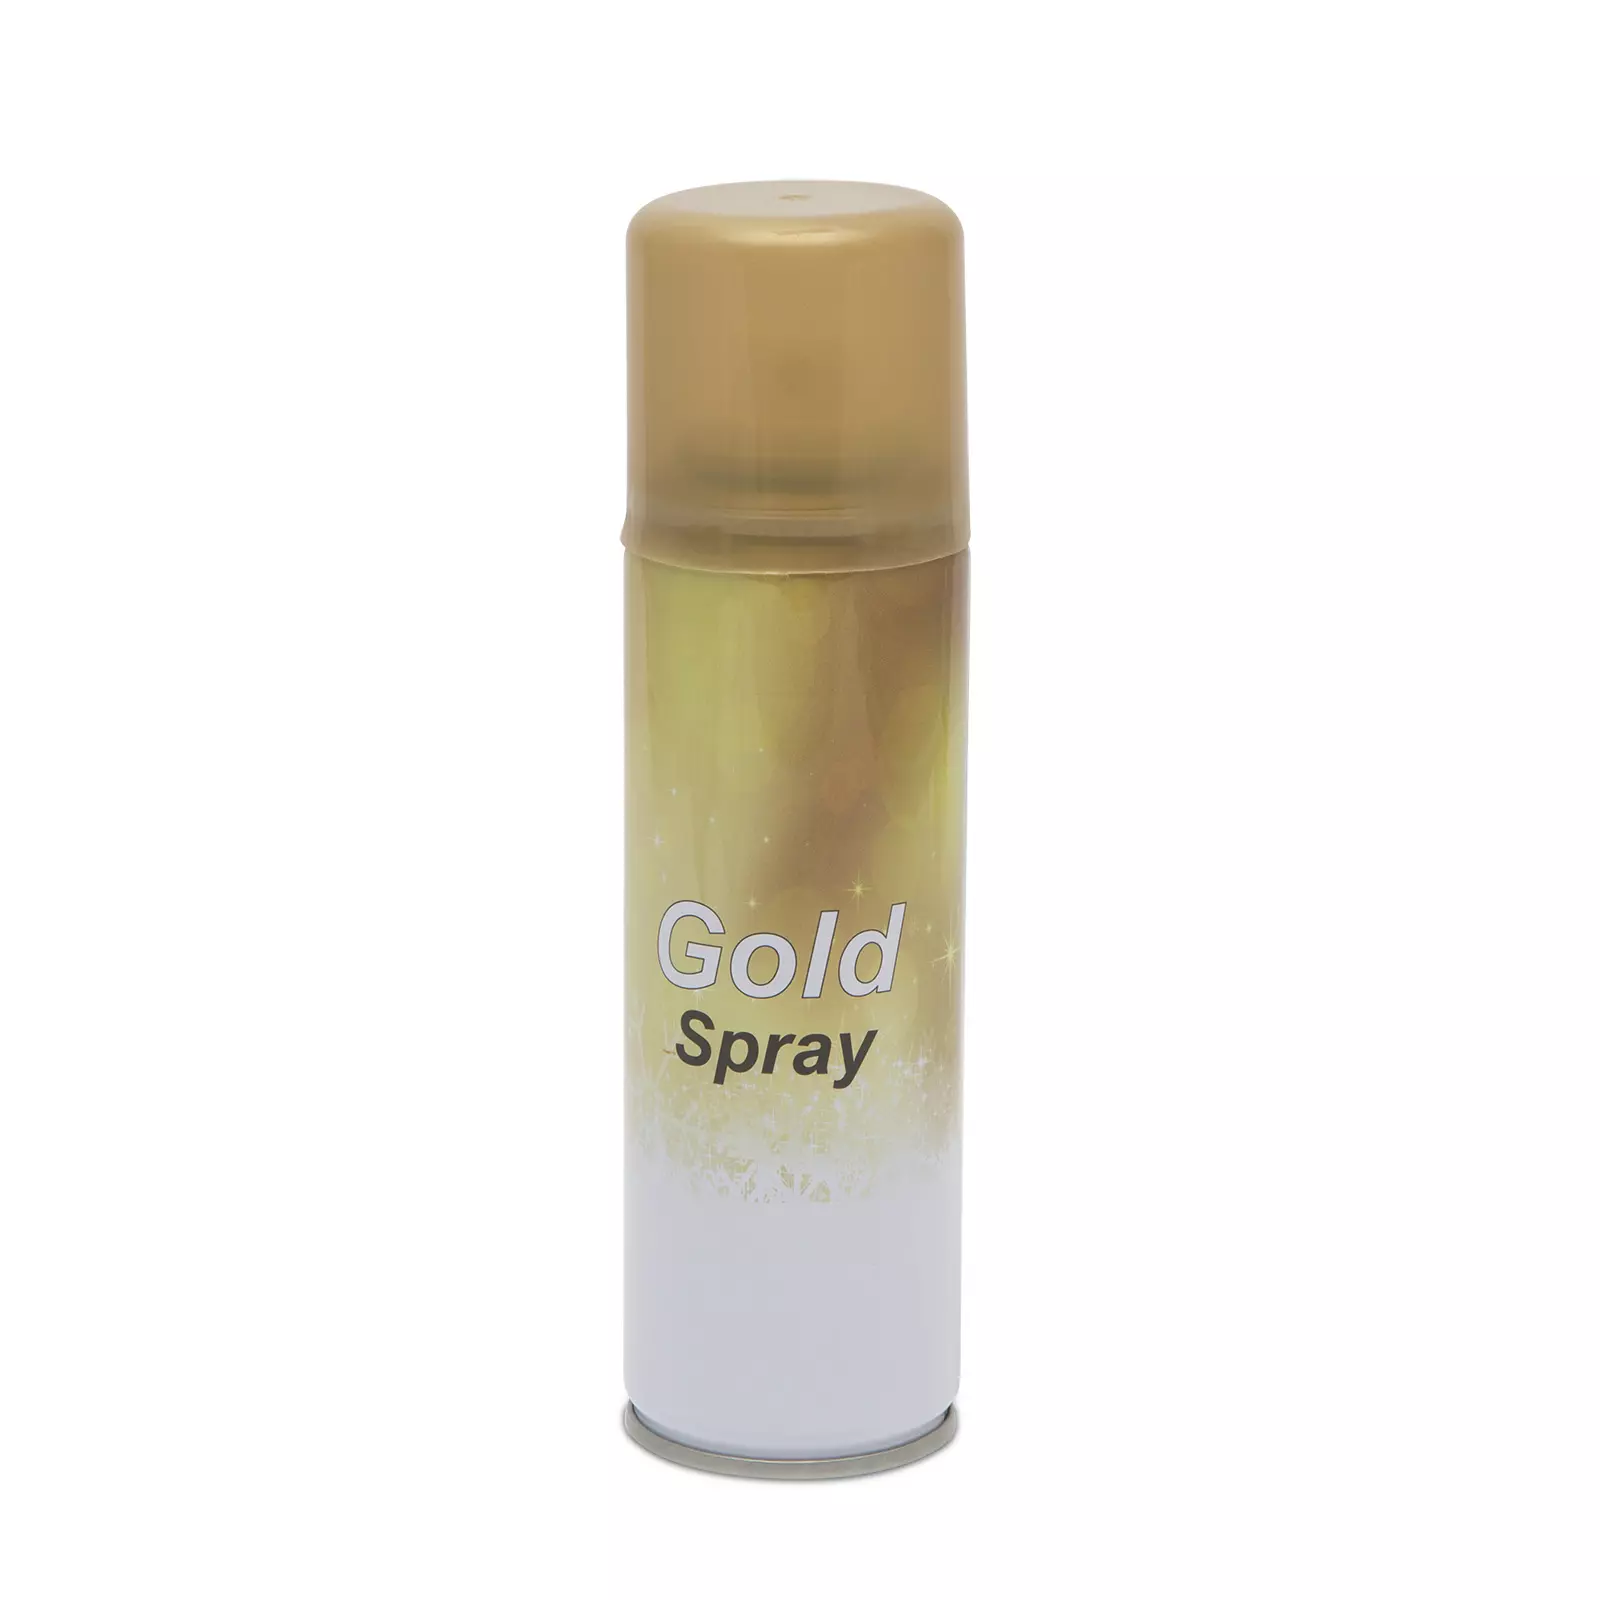 Arany dekorációs spray, lejárt szavatosságú, 100 ml (17130G)